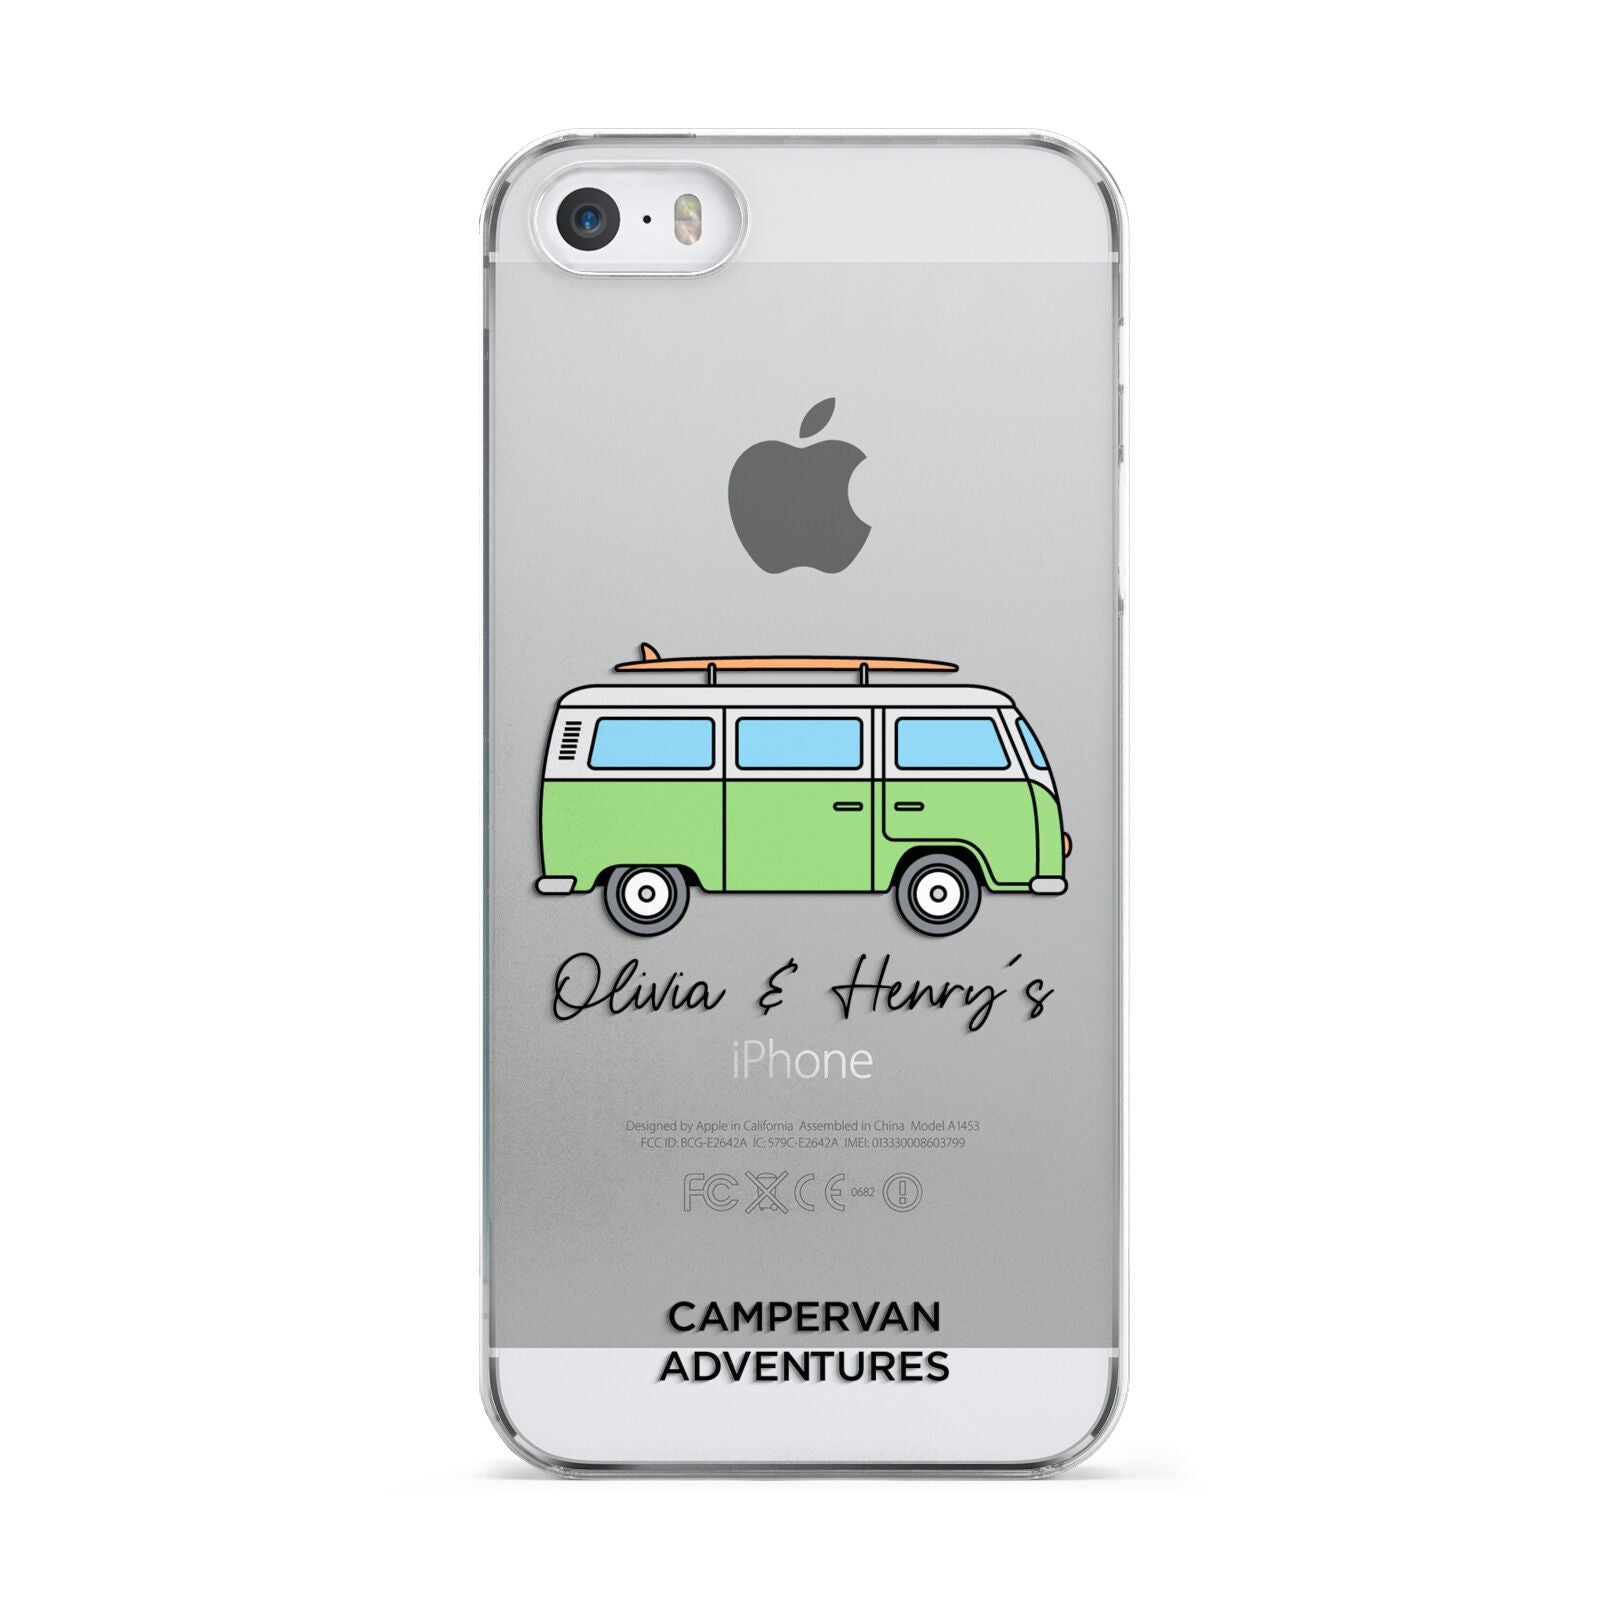 Green Bespoke Campervan Adventures Apple iPhone 5 Case